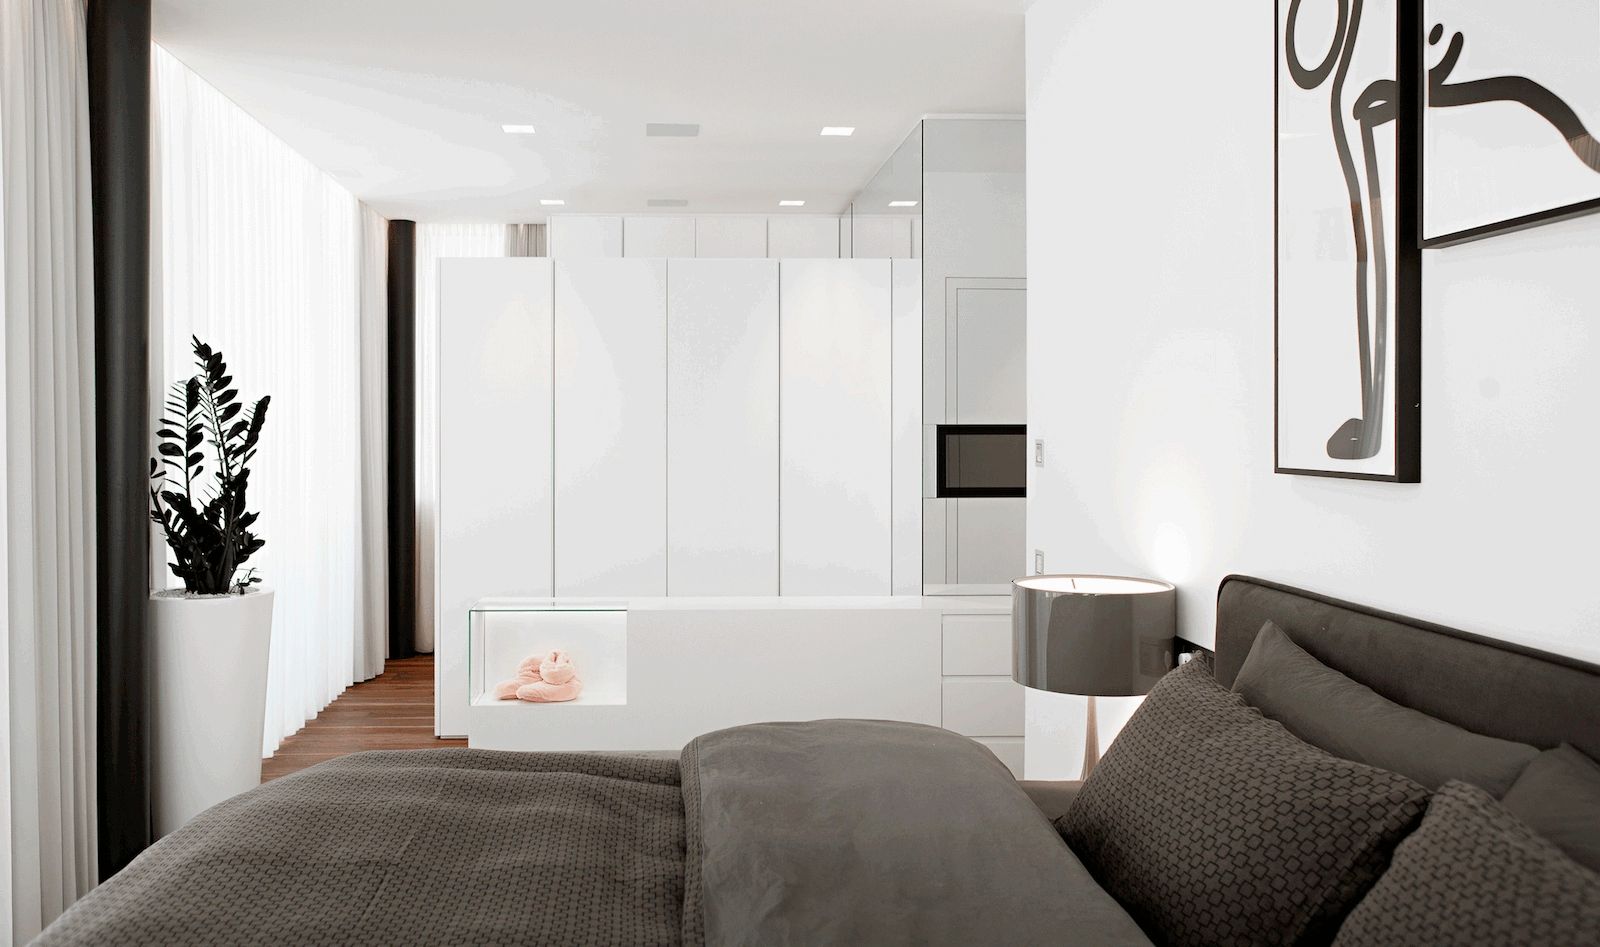 Casa M, monovolume architecture + design monovolume architecture + design モダンスタイルの寝室